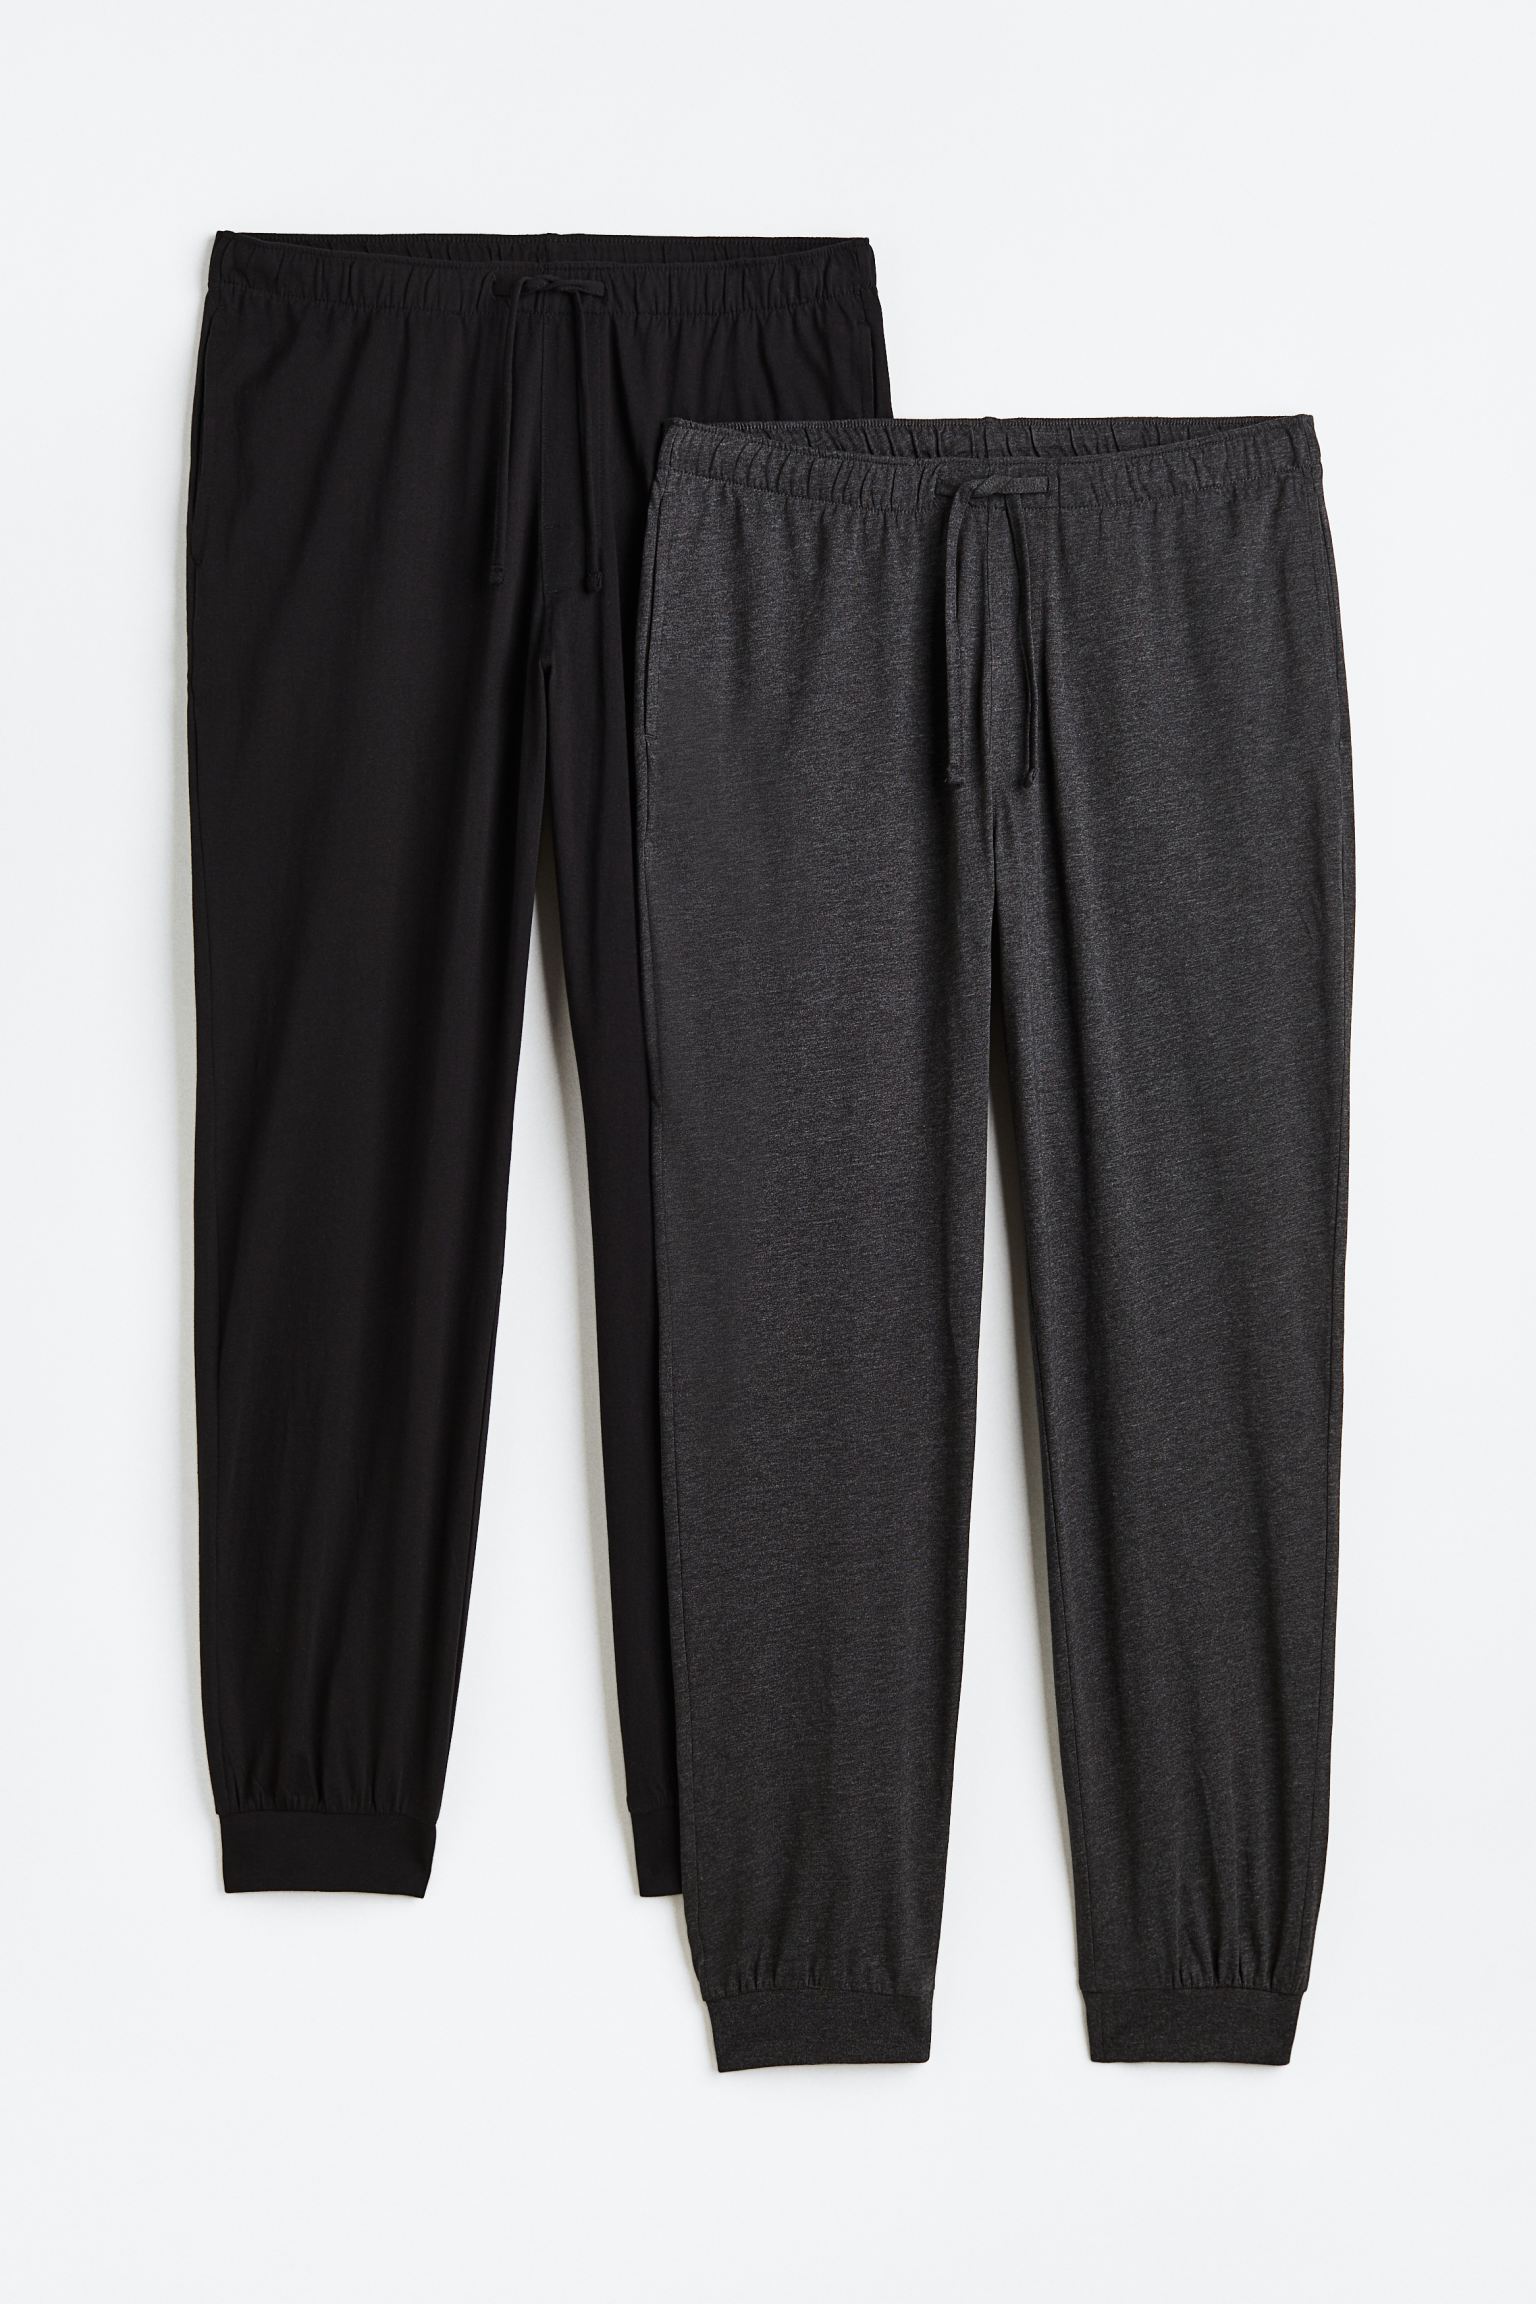 Комплект брюк H&M Regular Fit Pajama, 2 предмета, черный/темно-серый